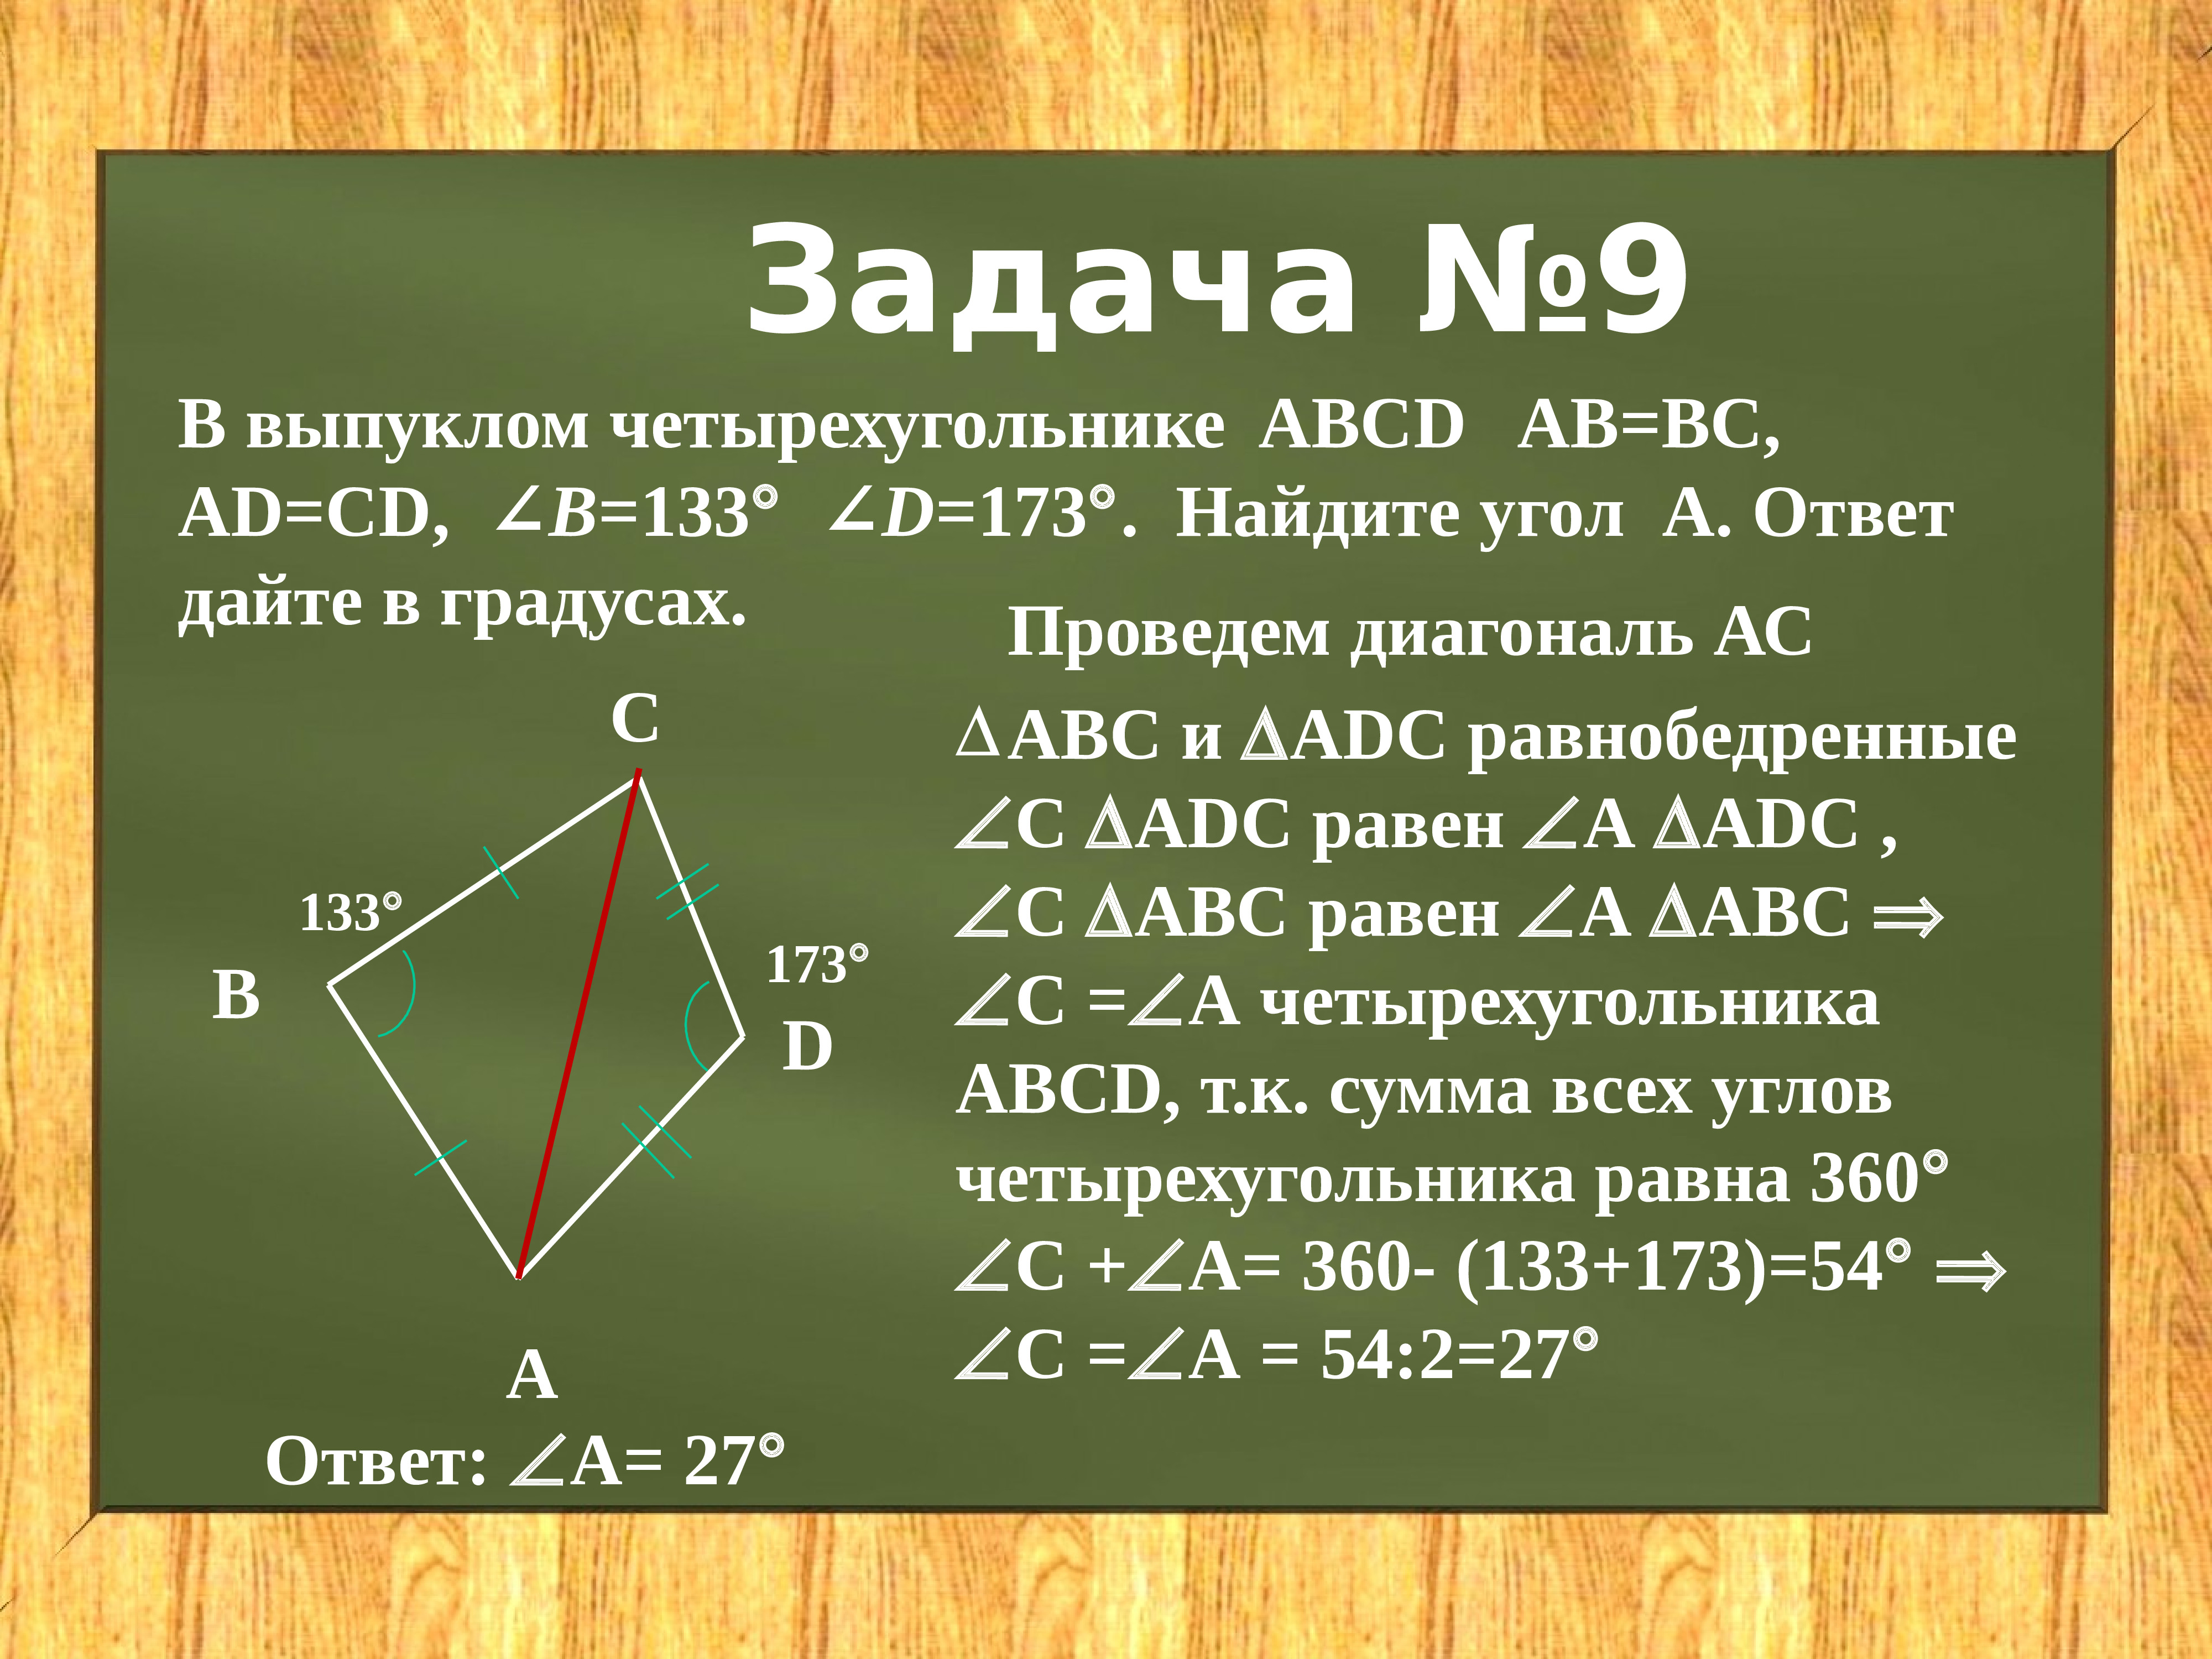 Https ad ab ru. Диагонали четырехугольника ABCD. Выпуклом четырёхугольнике ABCD. Выпуклом четырѐхугольнике ABCD. Выпуклый четырехугольник.